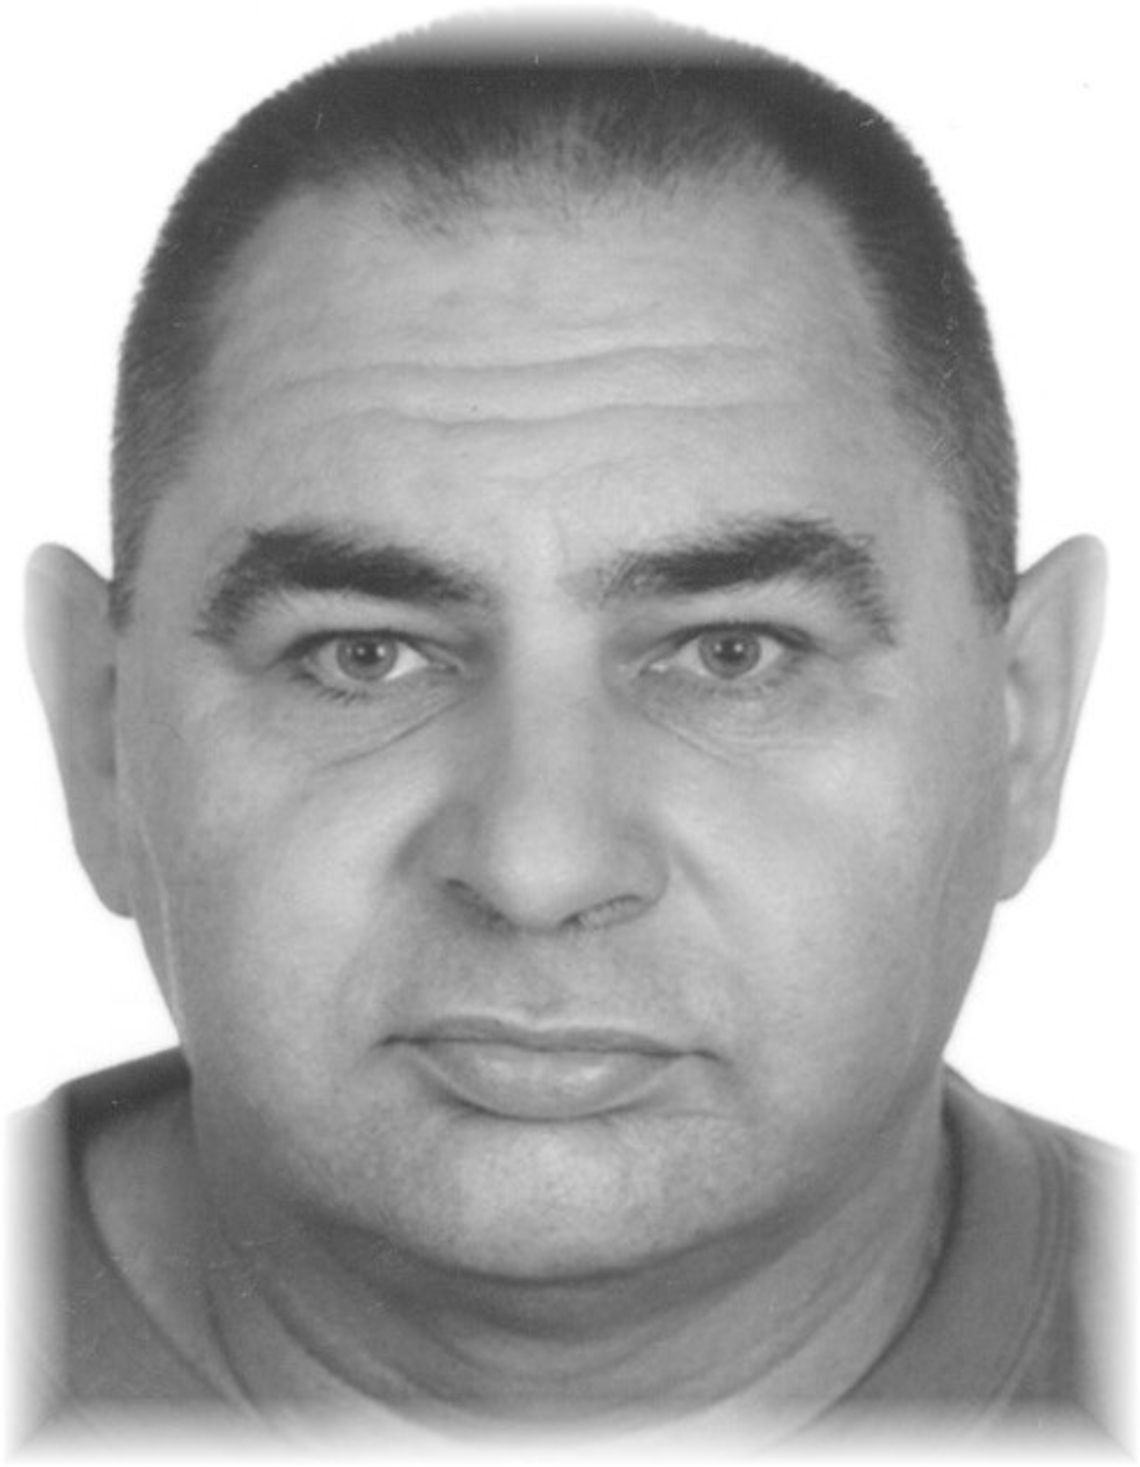 Pilny komunikat policji! Poszukiwany 54-letni Mirosław Marek, podejrzewany o podwójne morderstwo